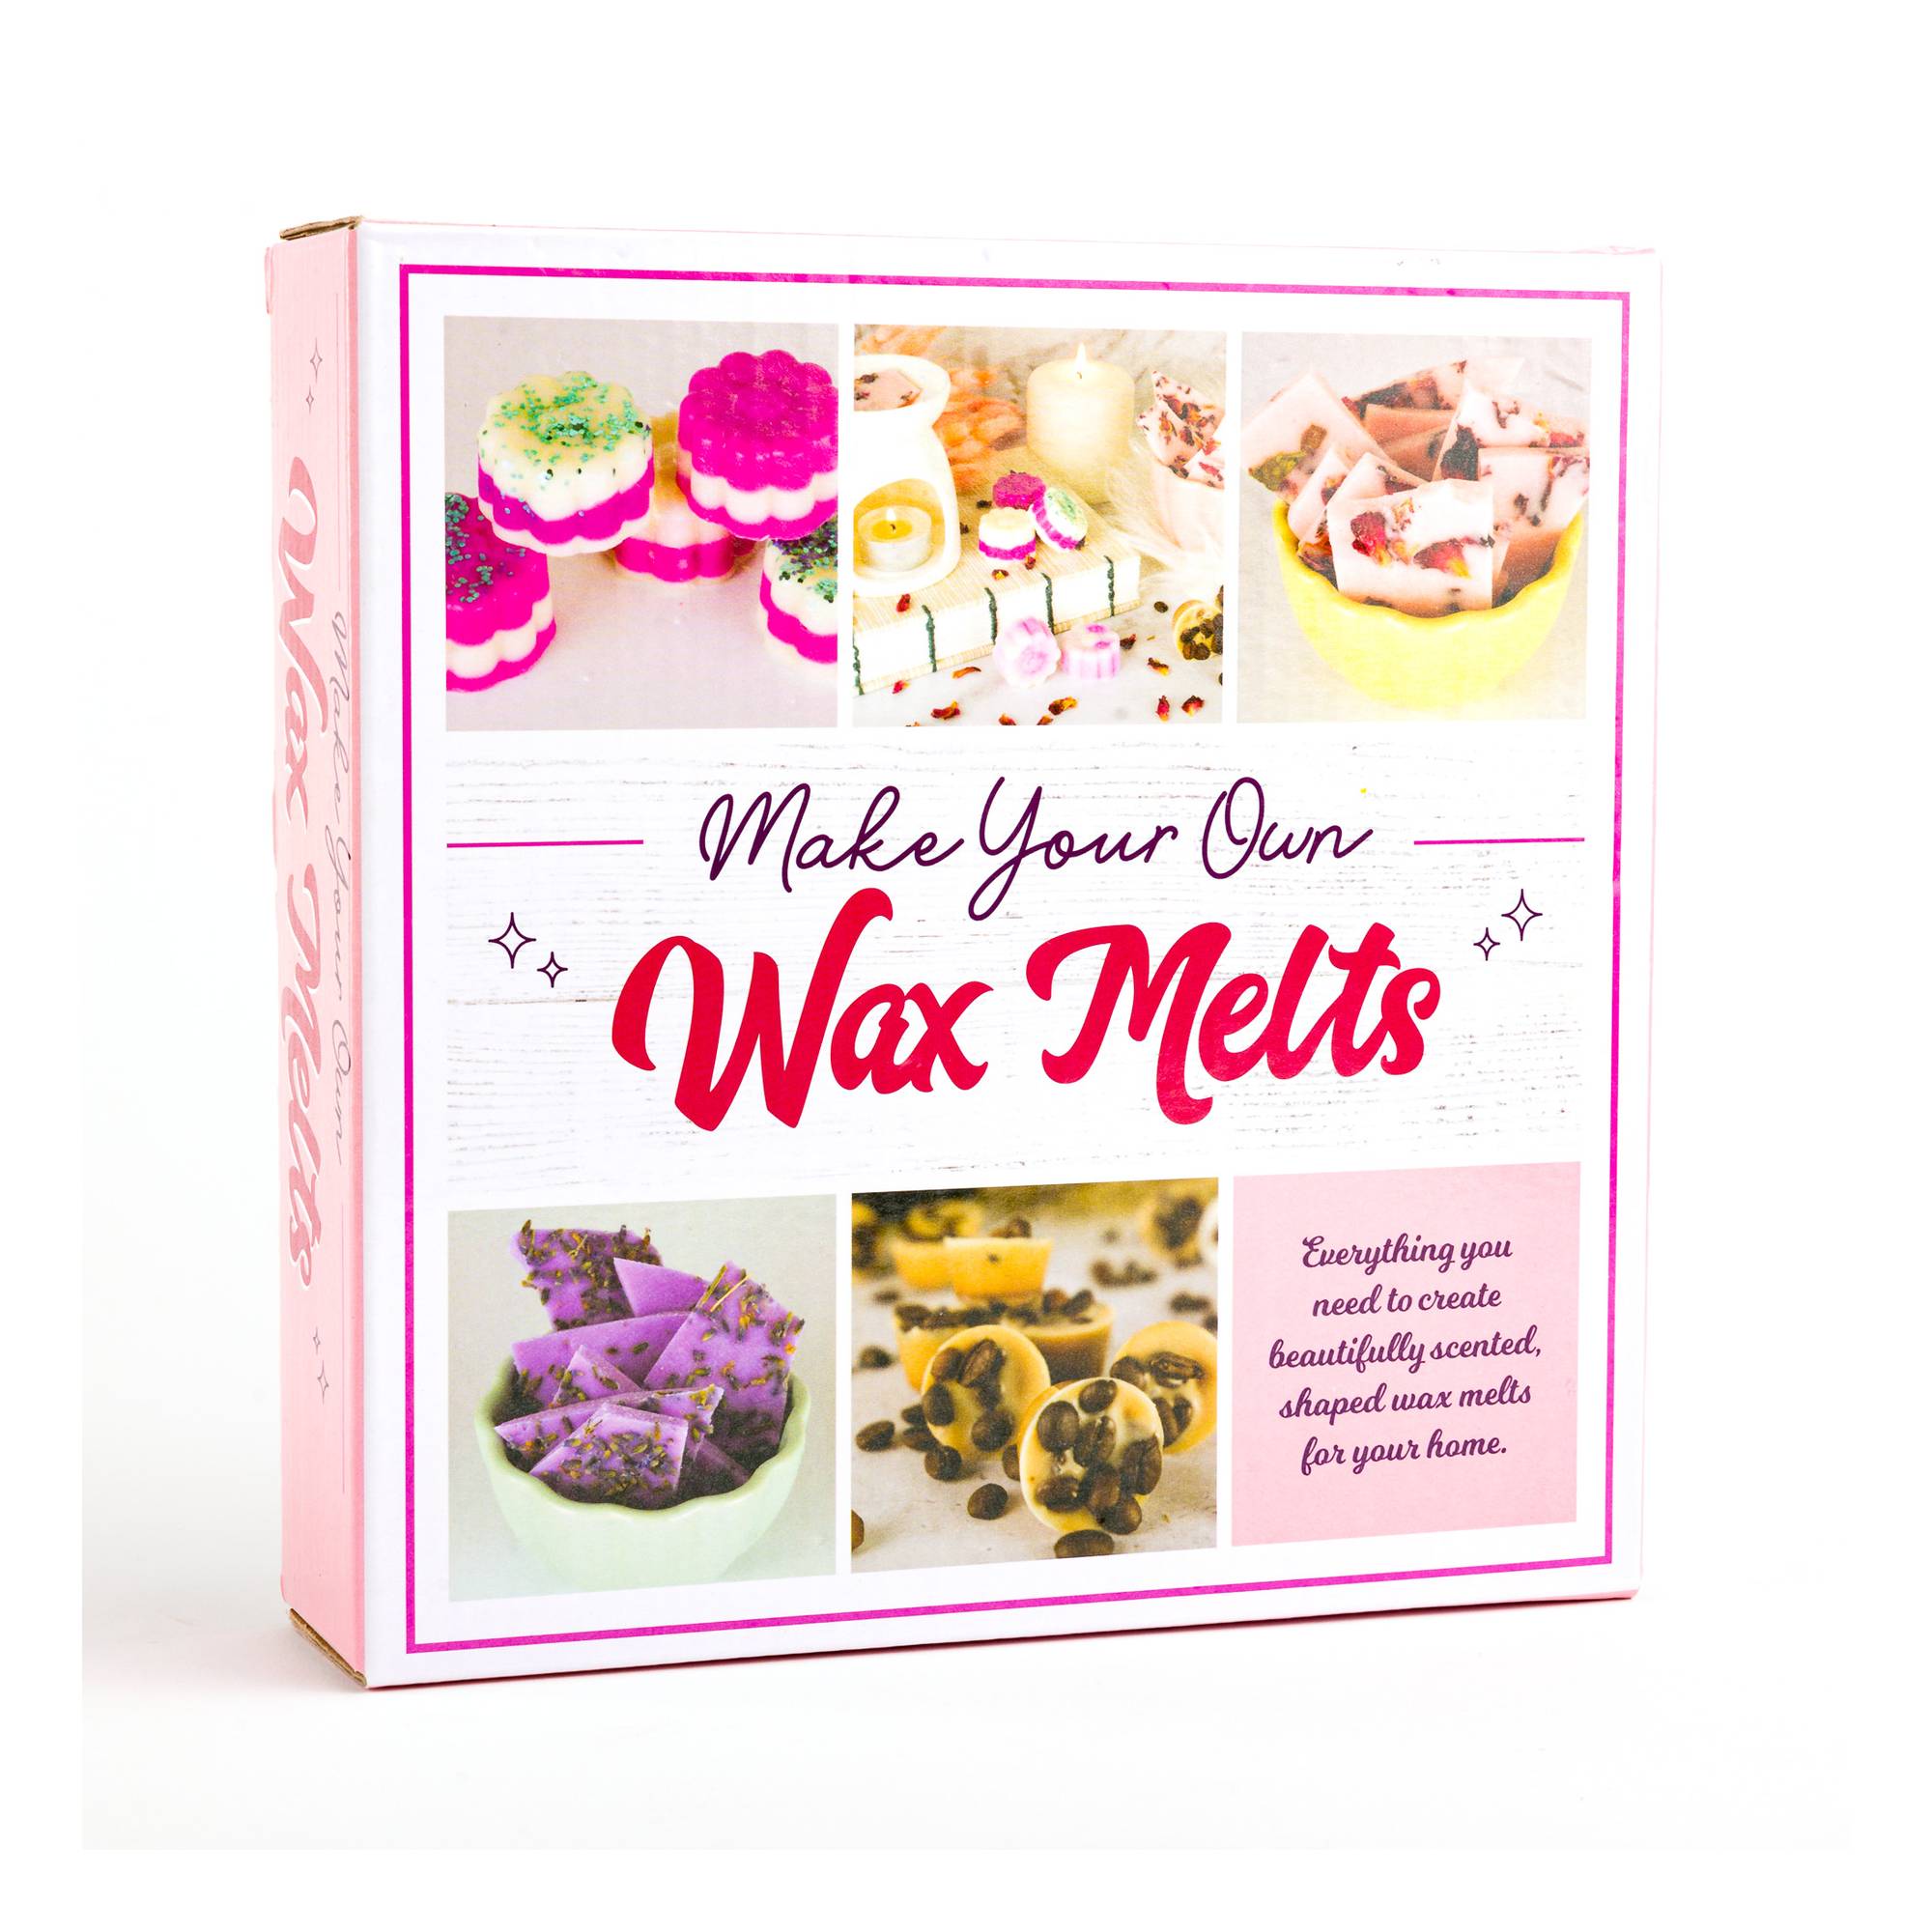 Wax Melt Kit